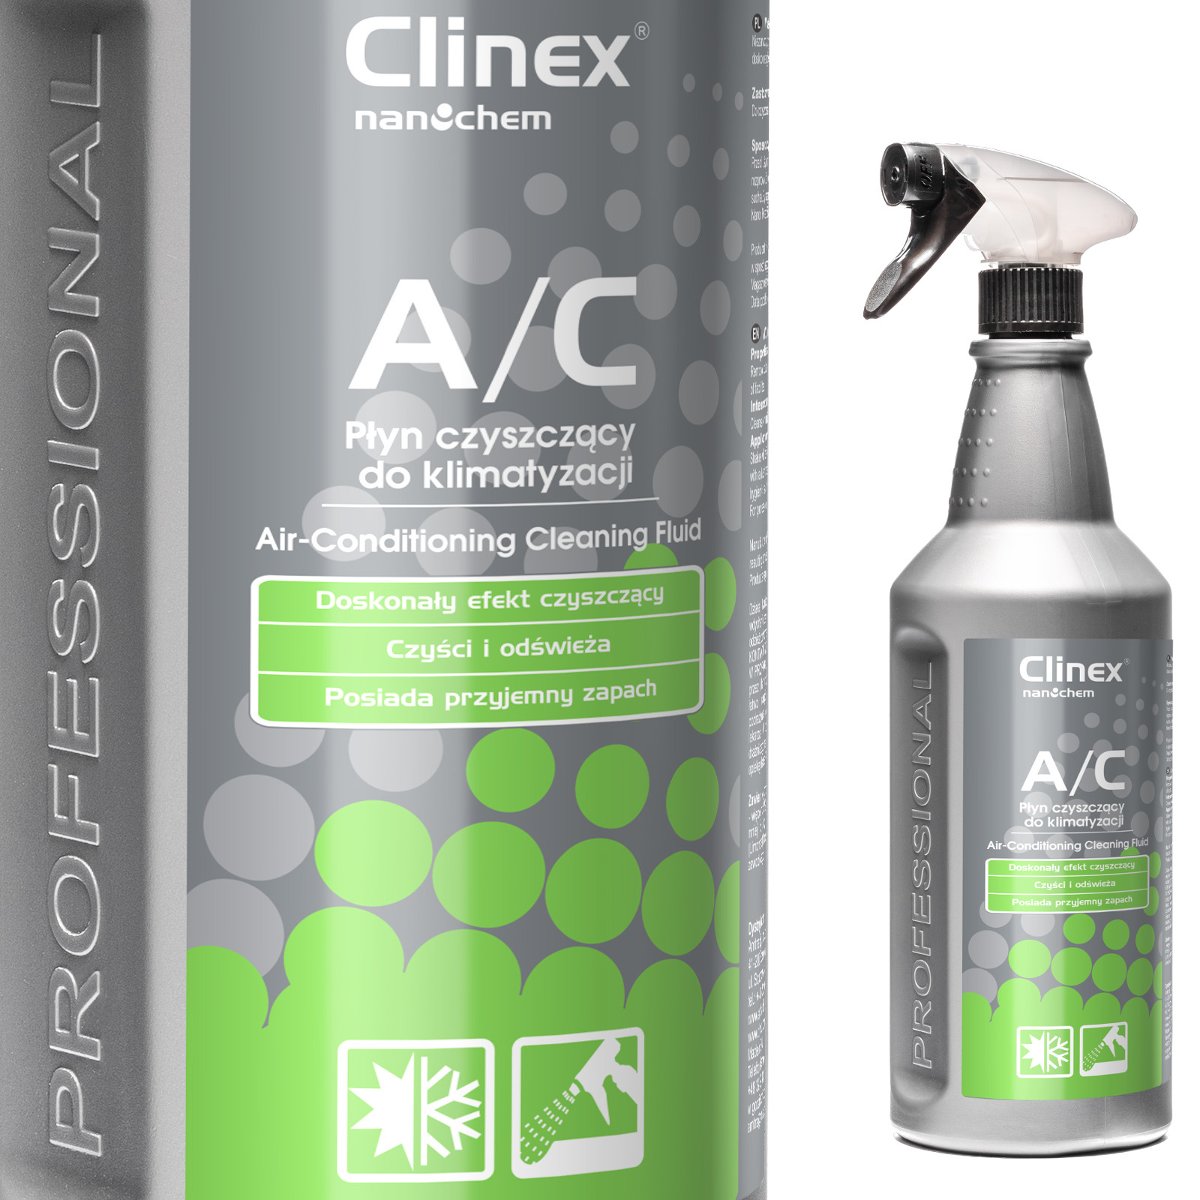 Clinex A/C Płyn czyszczący do klimatyzacji 1L 77-554